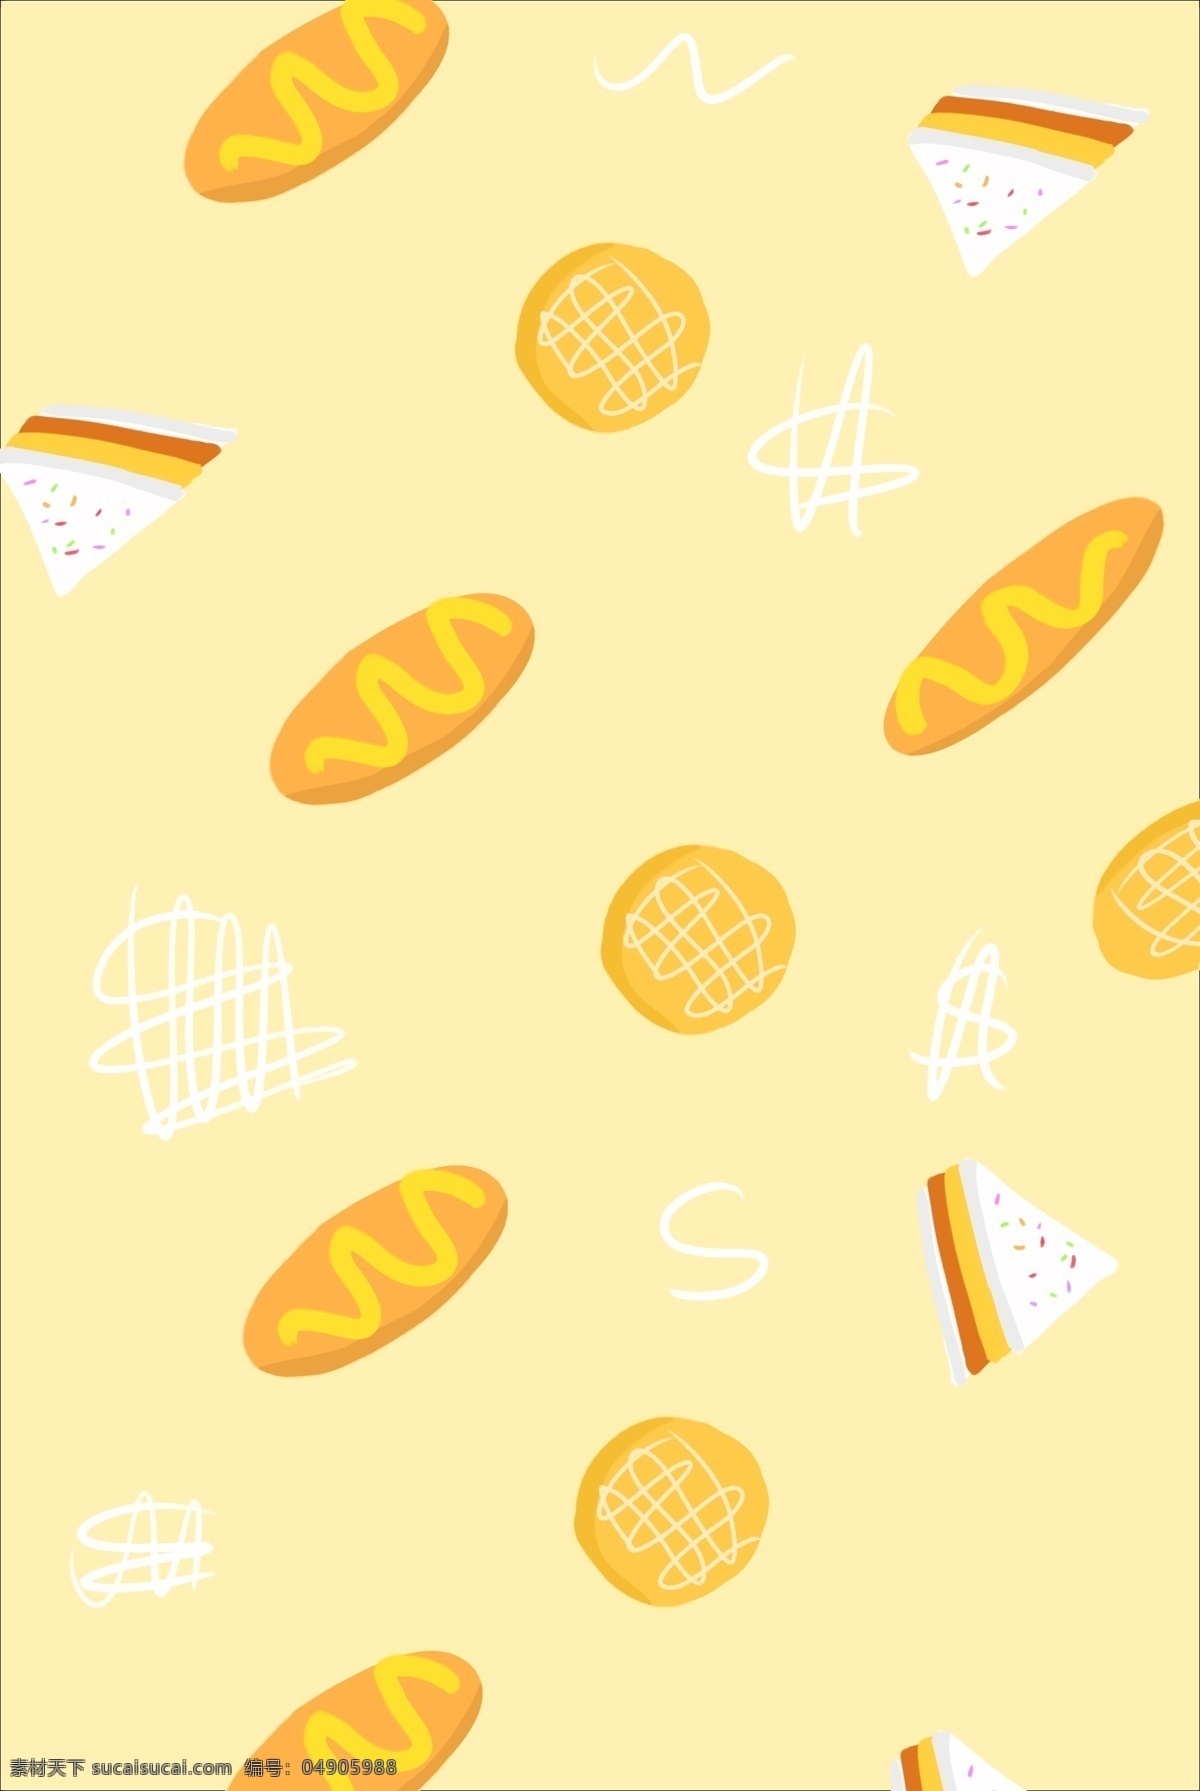 面包 底纹 装饰 插画 面包底纹 黄色的底纹 食物底纹 美食底纹 烘焙面包 底纹插画 创意的底纹